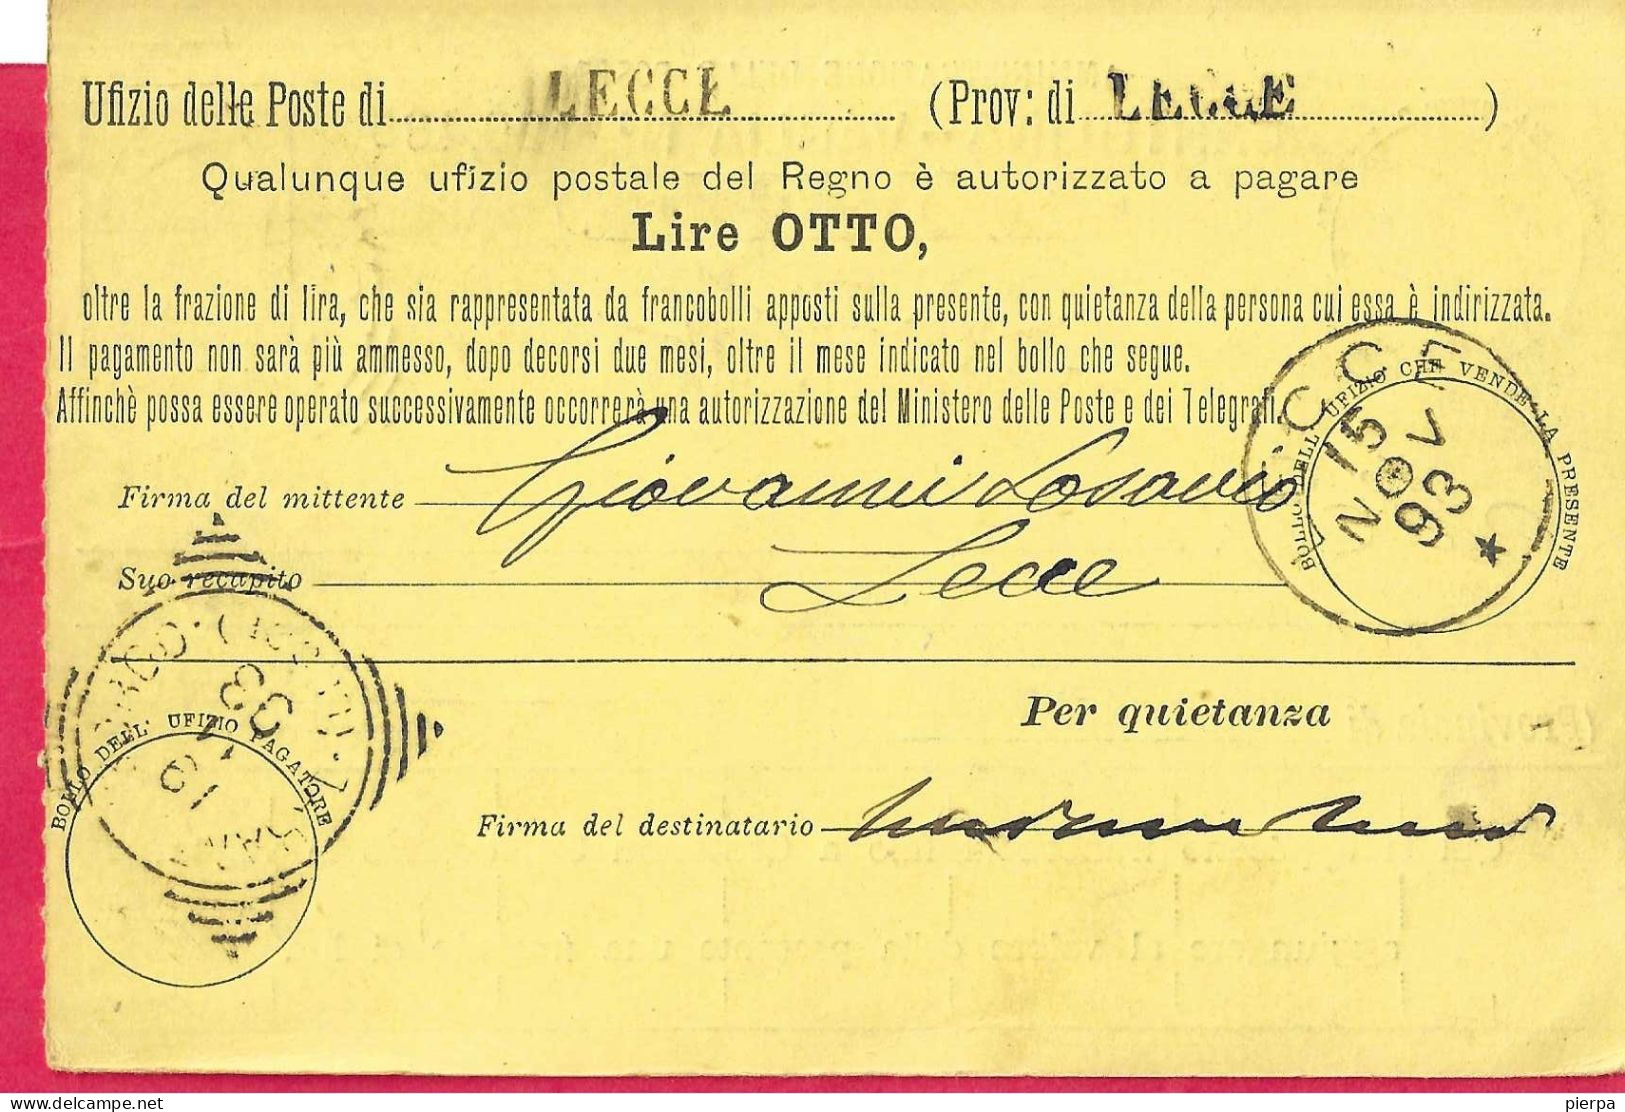 INTERO CARTOLINA-VAGLIA UMBERTO C.15 DA LIRE 8 (CAT. INT.12) -VIAGGIATA DA "LECCE*18.II.93* - ANNULLO TONDO RIQUADRATO - Stamped Stationery